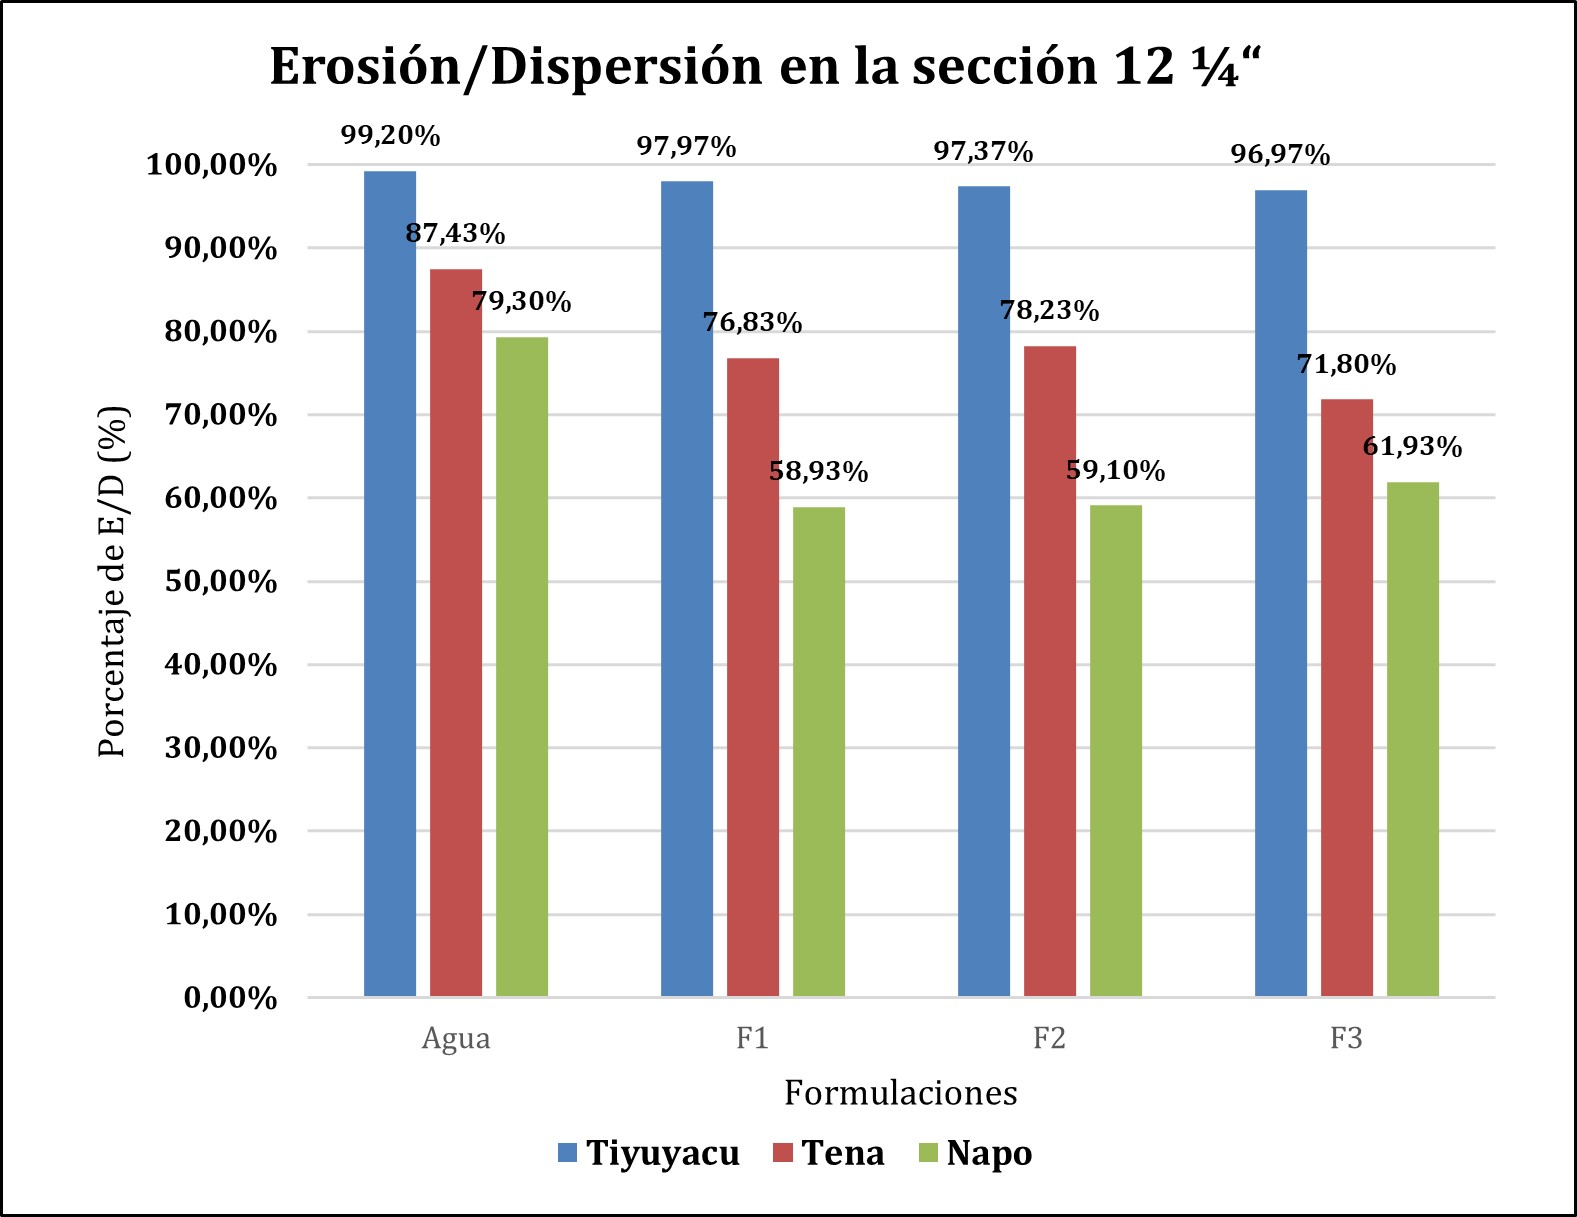 Erosión/Dispersión de Tiyuyacu,
Tena y Napo en la sección 12 ¼“